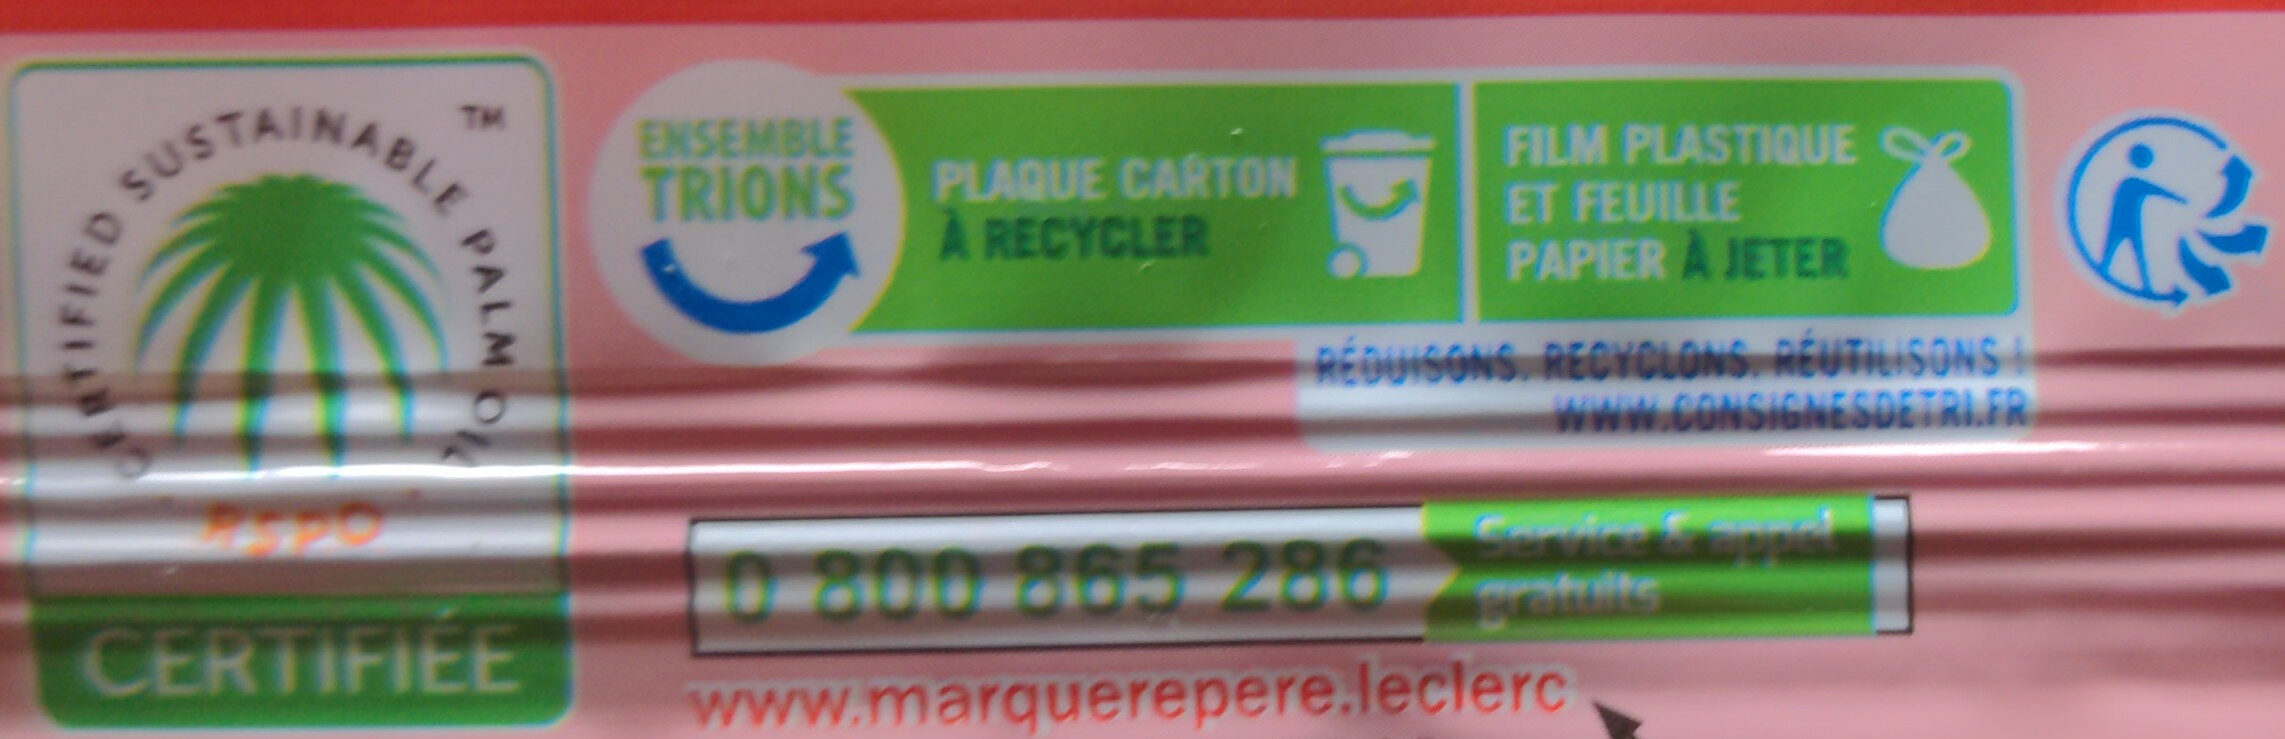 Pâte Brisée - Instruction de recyclage et/ou informations d'emballage